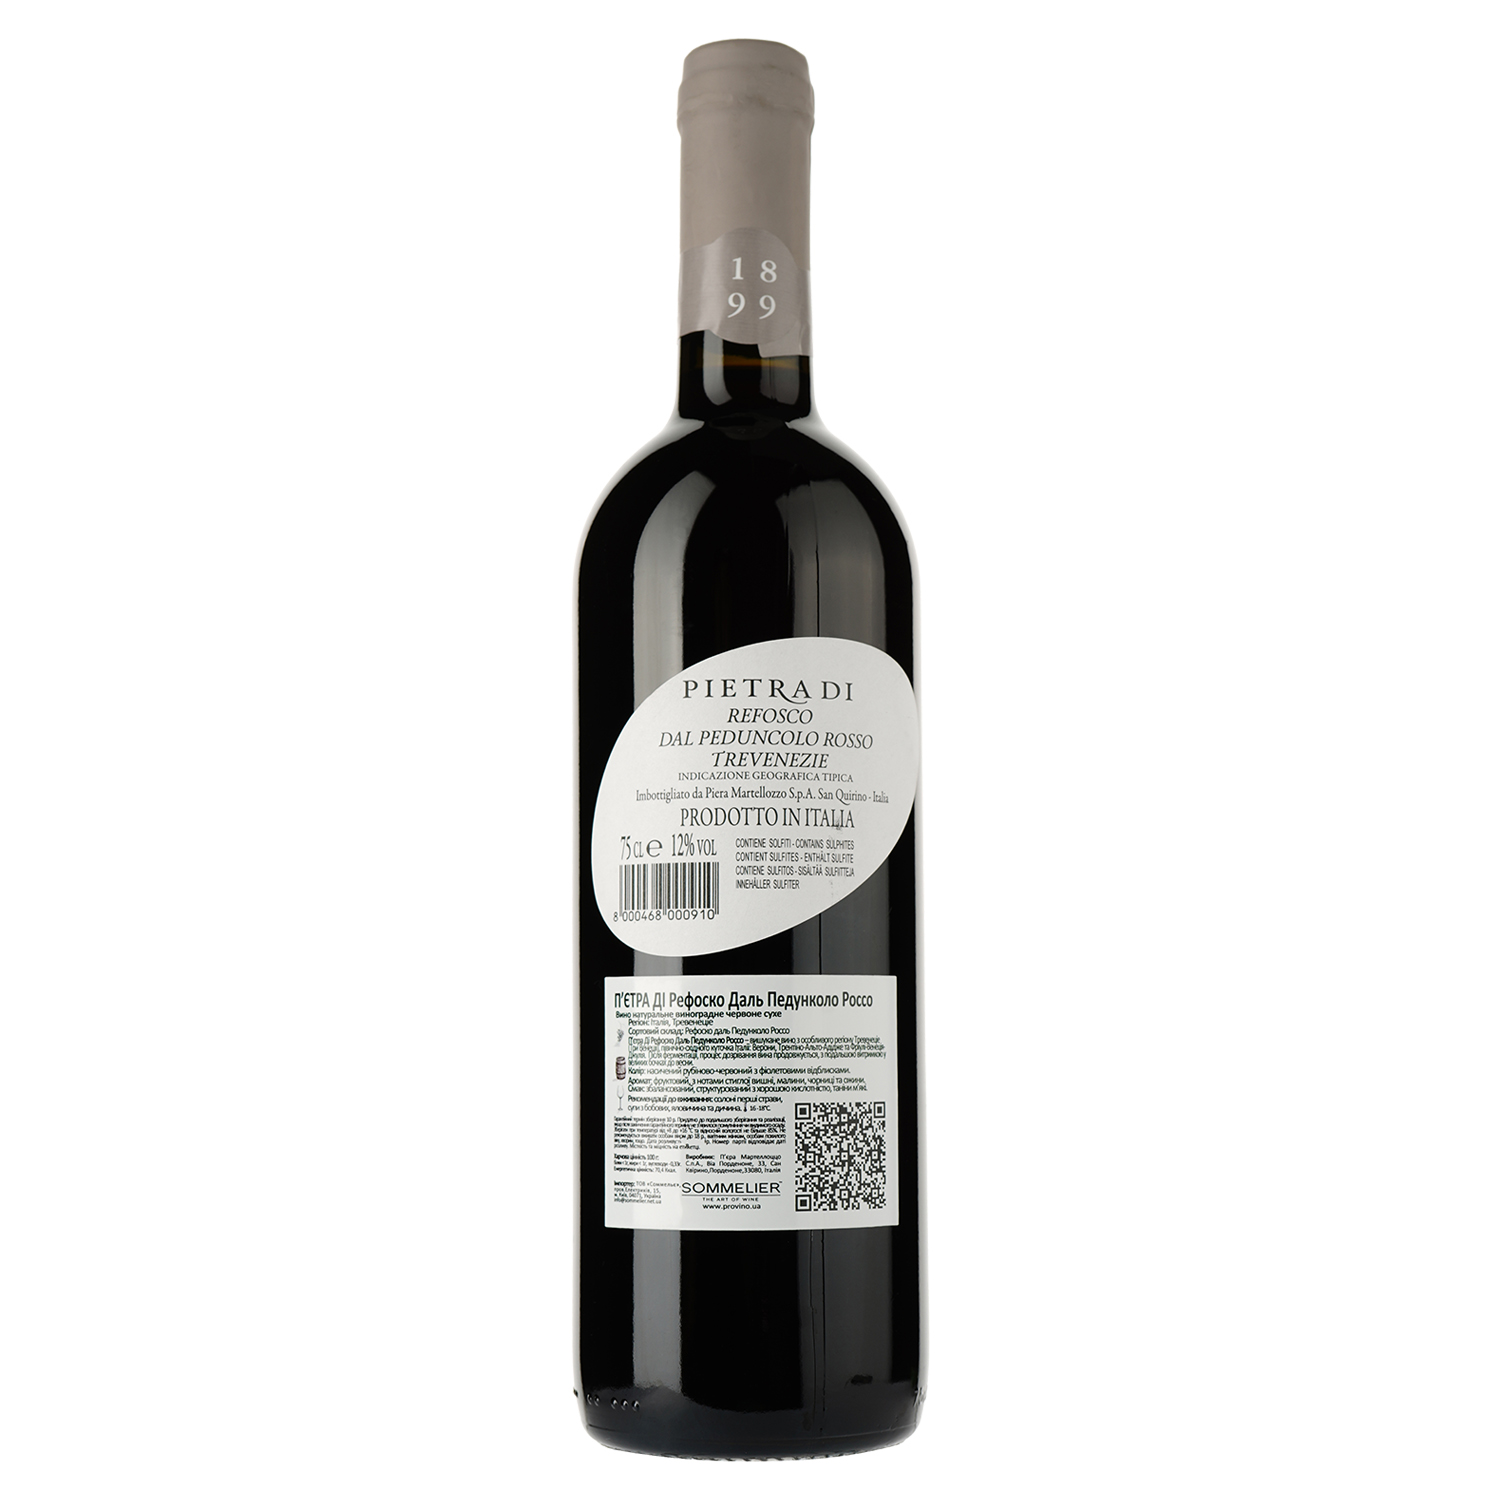 Вино Ronchi di Pietro di Refosco dal Peduncolo Rosso Tre Venezie IGT, червоне, сухе, 0,75 л - фото 2